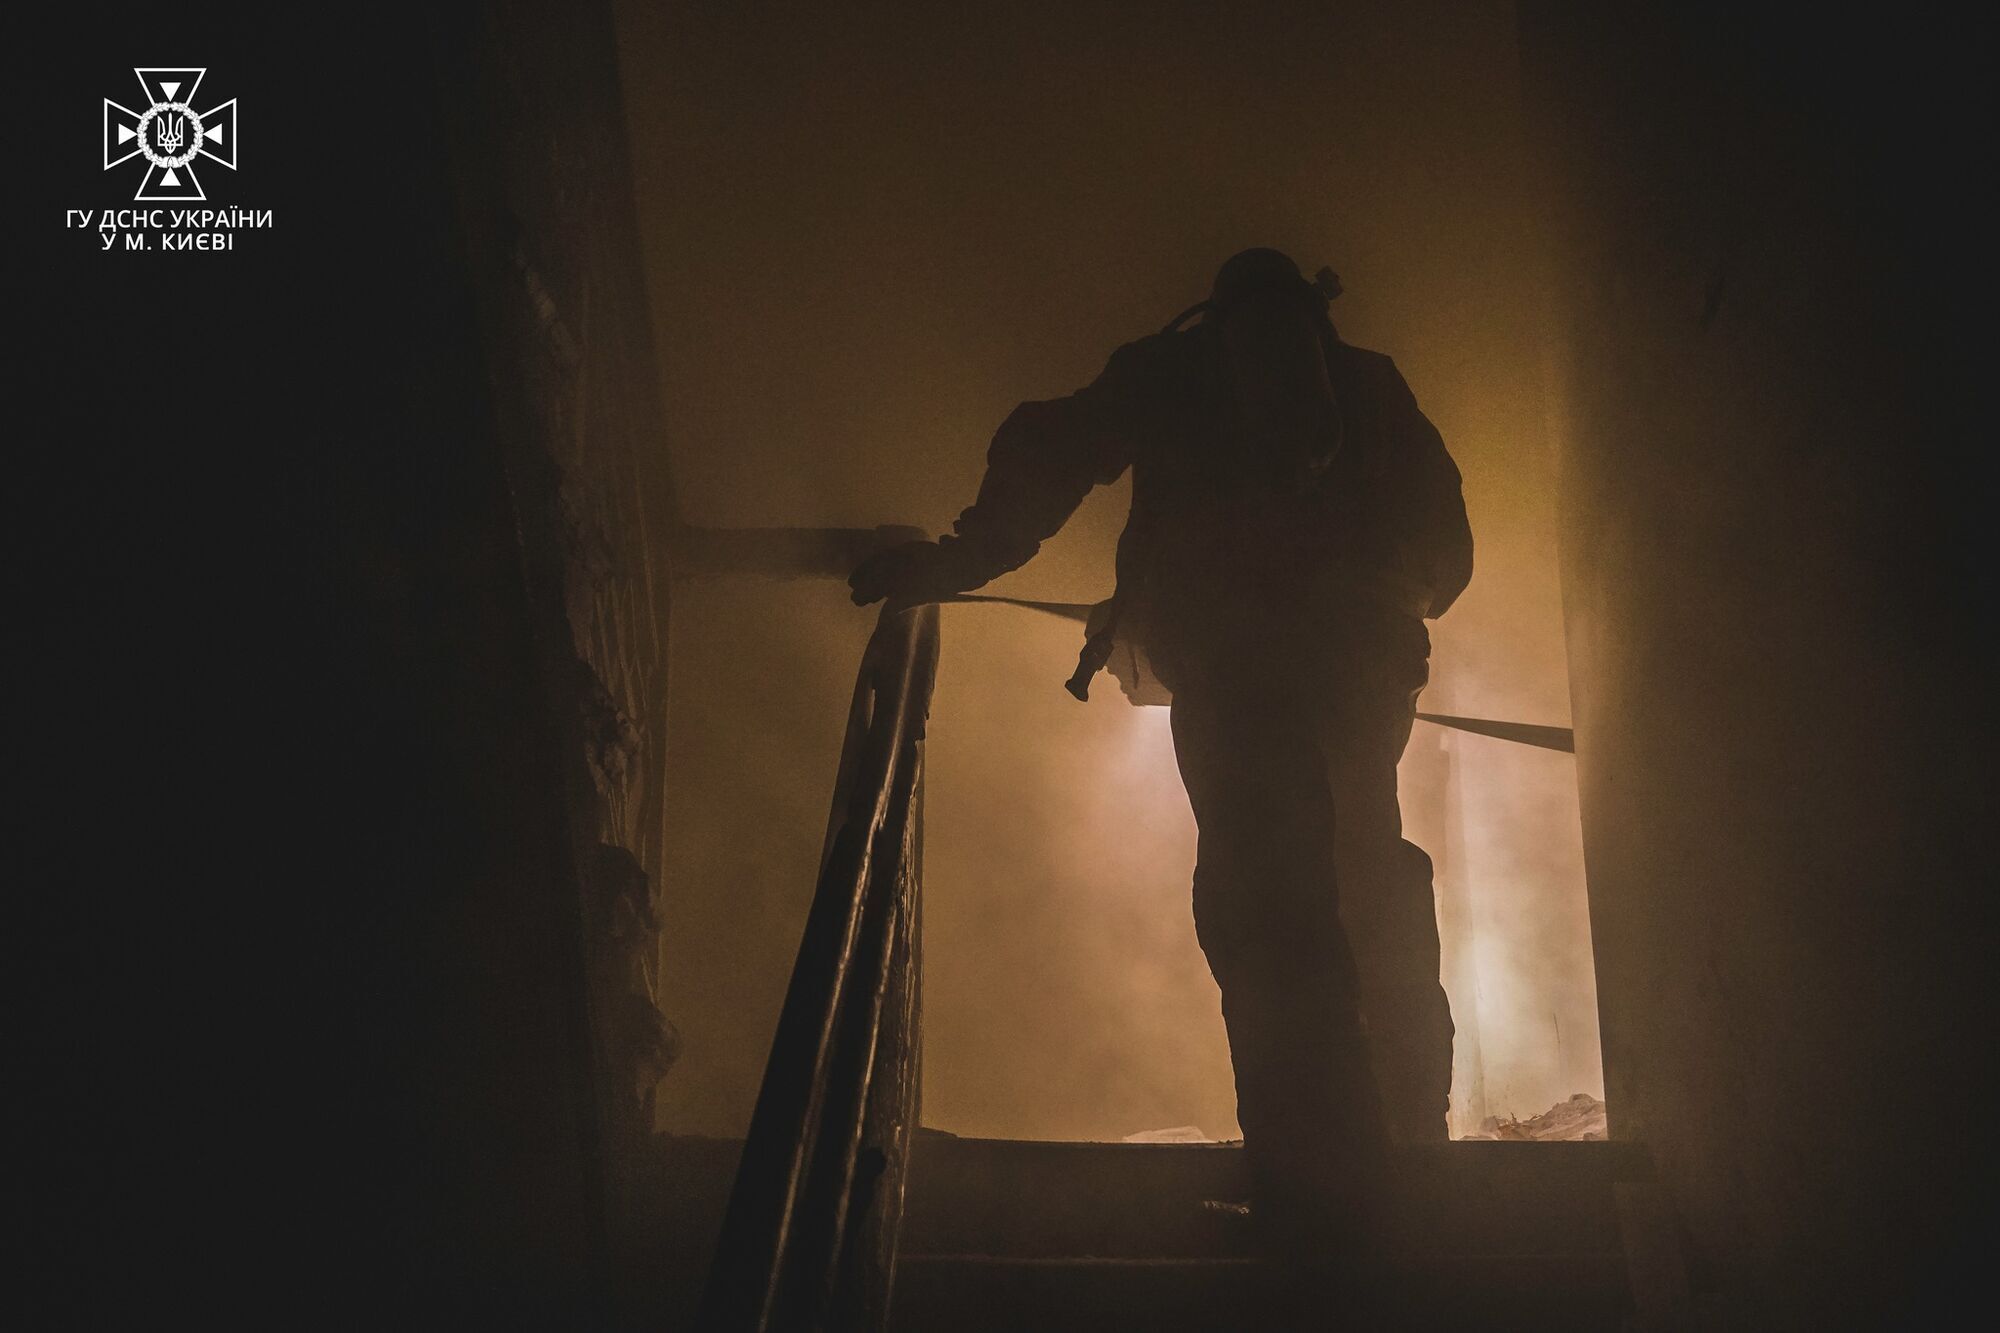 В Киеве обнаружили тело мужчины во время тушения пожара в отселенном доме. Фото и видео